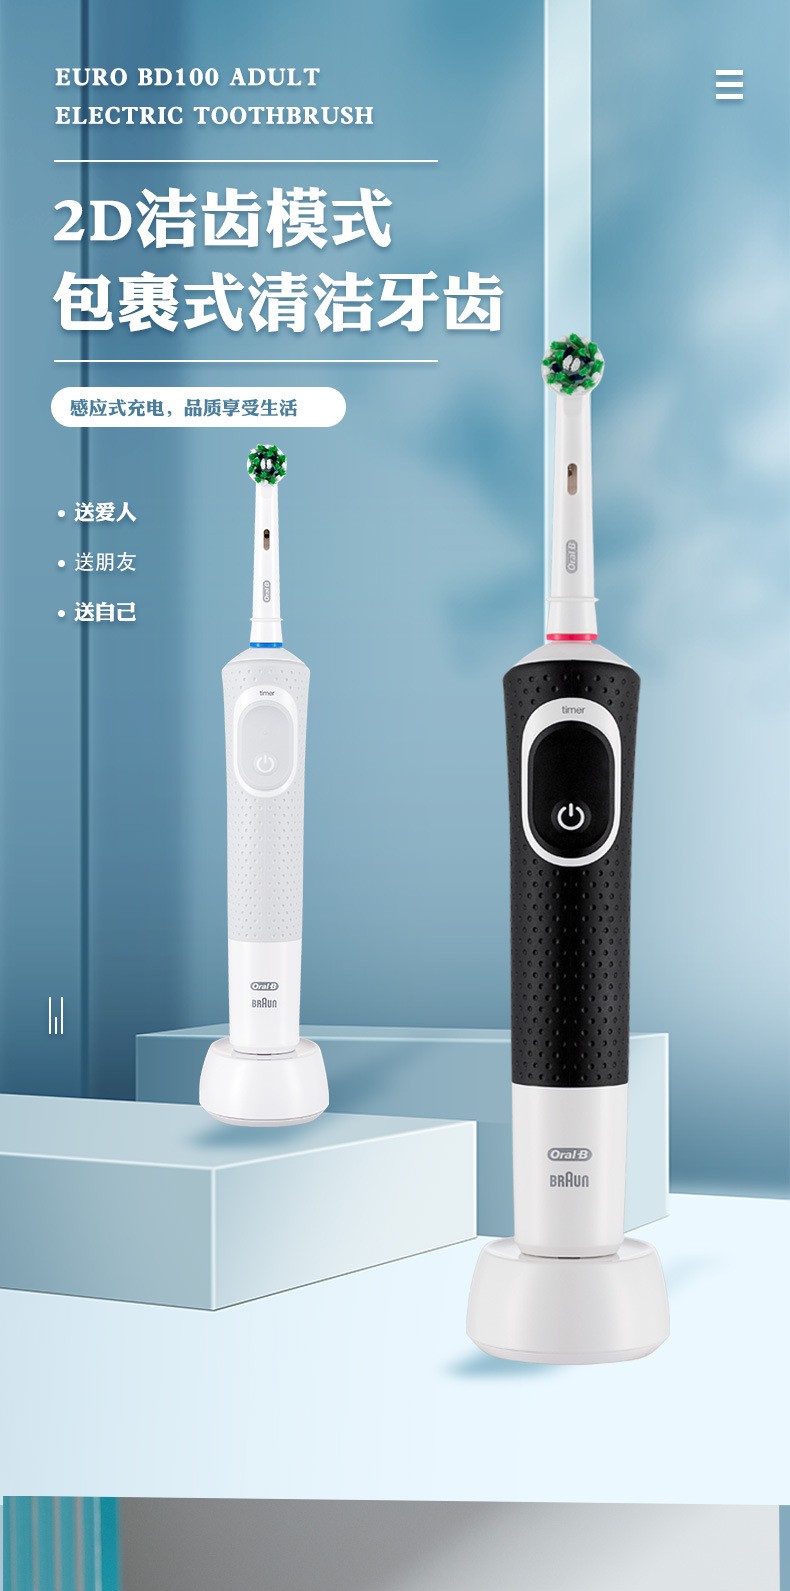 欧乐b2d包裹式清洁电动牙刷